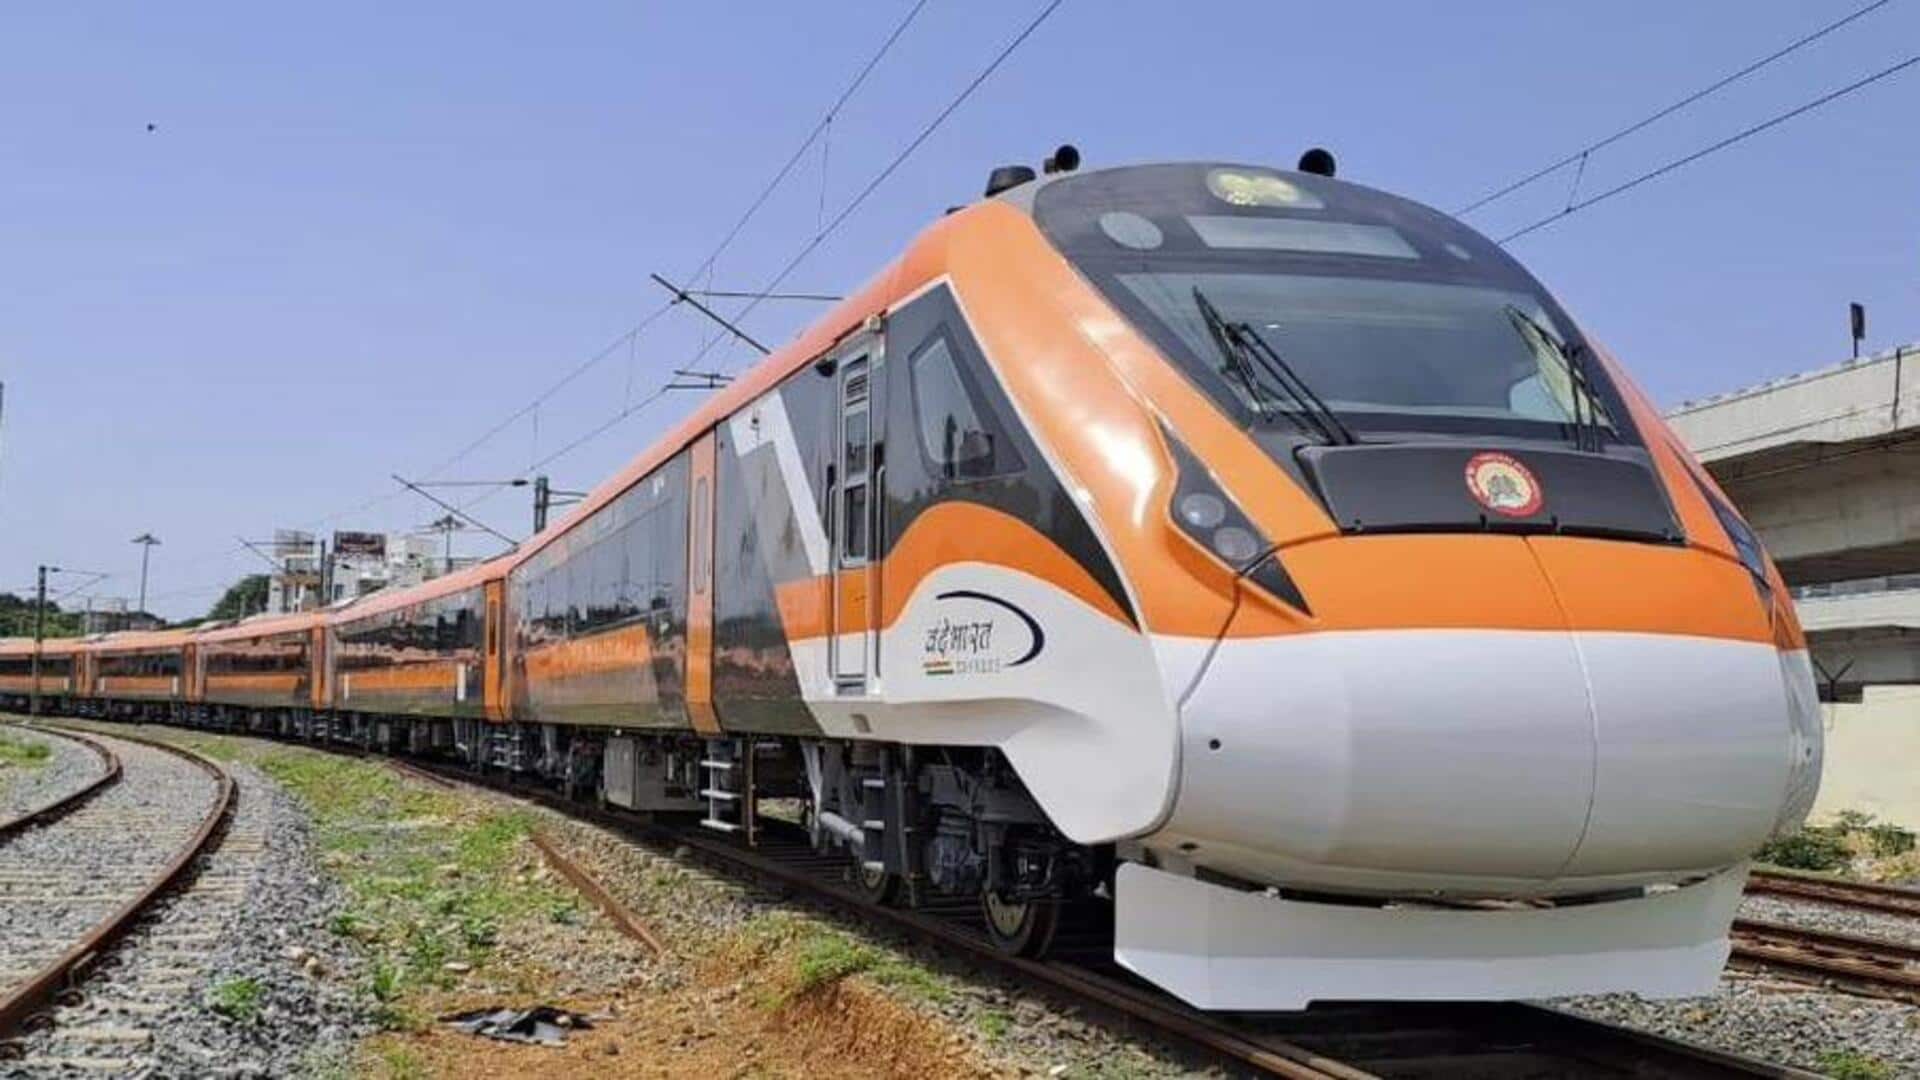 प्रधानमंत्री मोदी 25 सितंबर को एक साथ 9 वंदे भारत एक्सप्रेस ट्रेनों को दिखाएंगे हरी झंडी